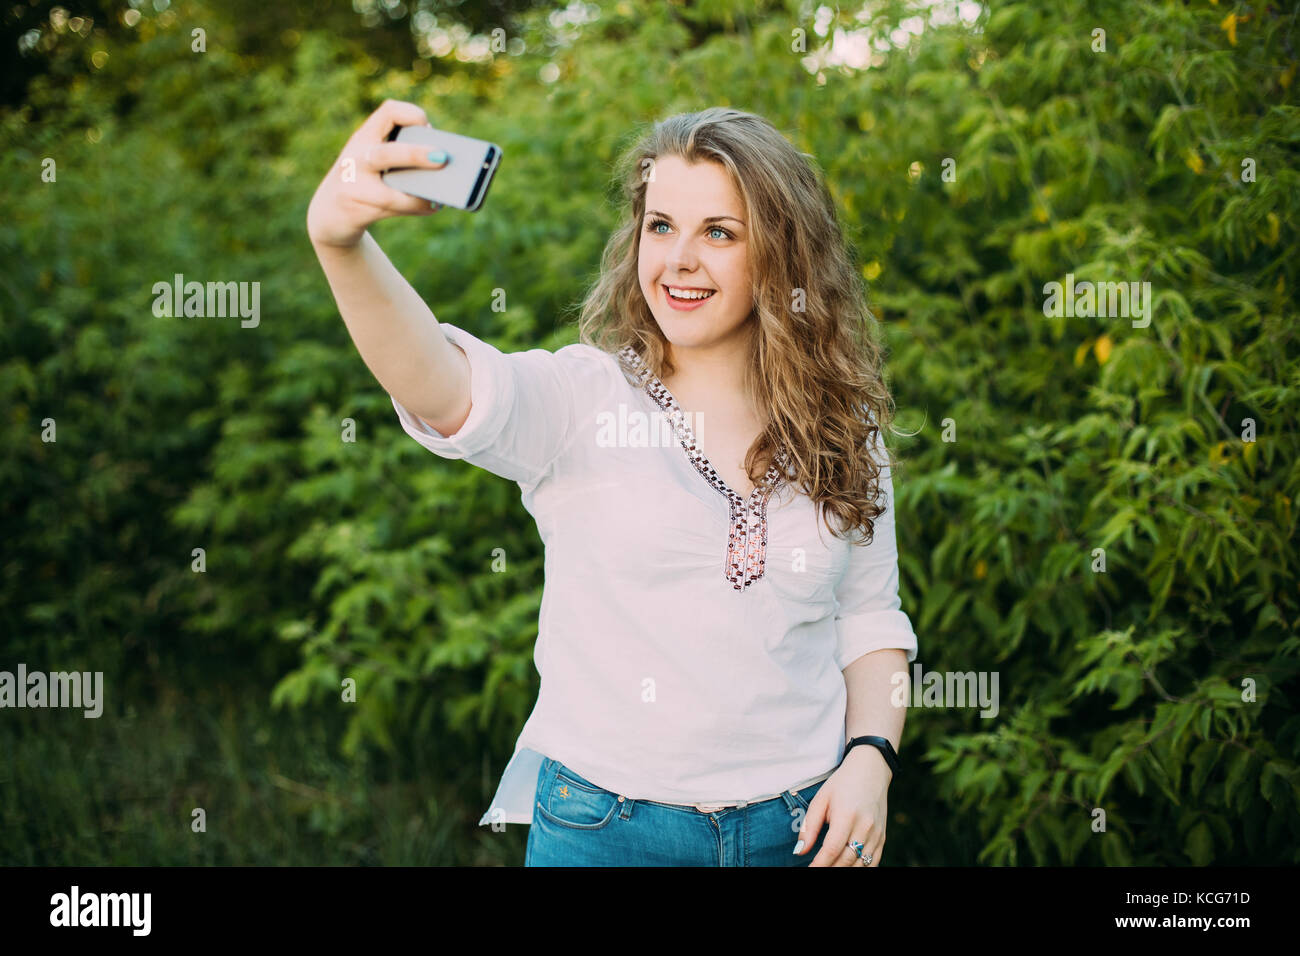 Junge schöne ziemlich Plus size kaukasische Mädchen Frau in weißen Bluse das Leben genießen gekleidet, lächelnd, Spaß und unter selfie Foto auf dem Smartphone Stockfoto